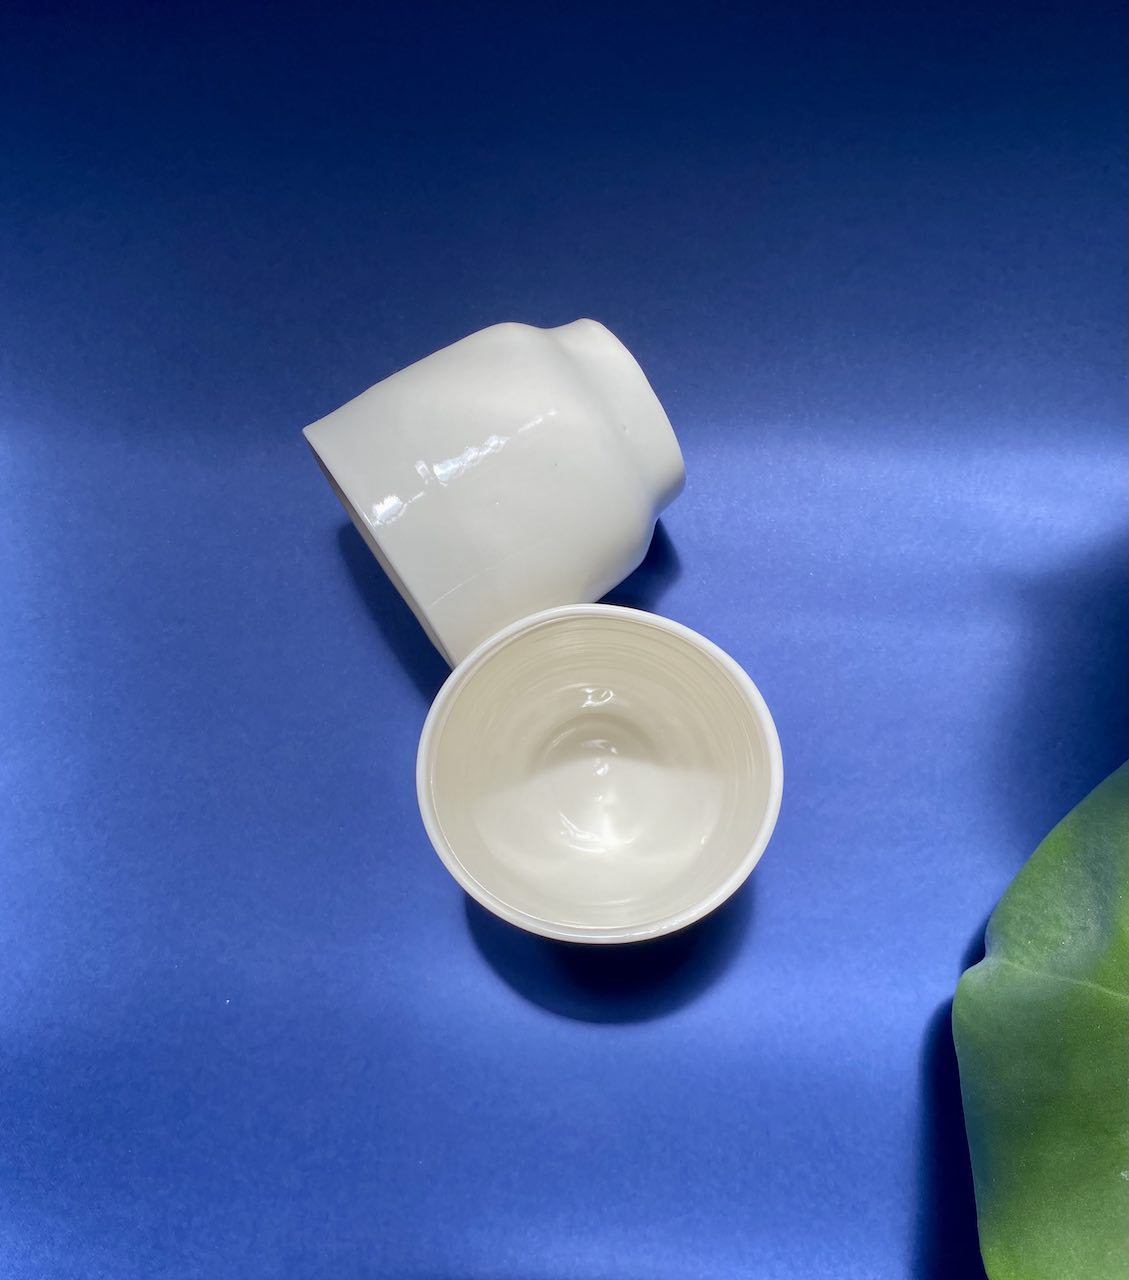 Tasse à café en porcelaine Hymy céramique fait main artisanalement en France